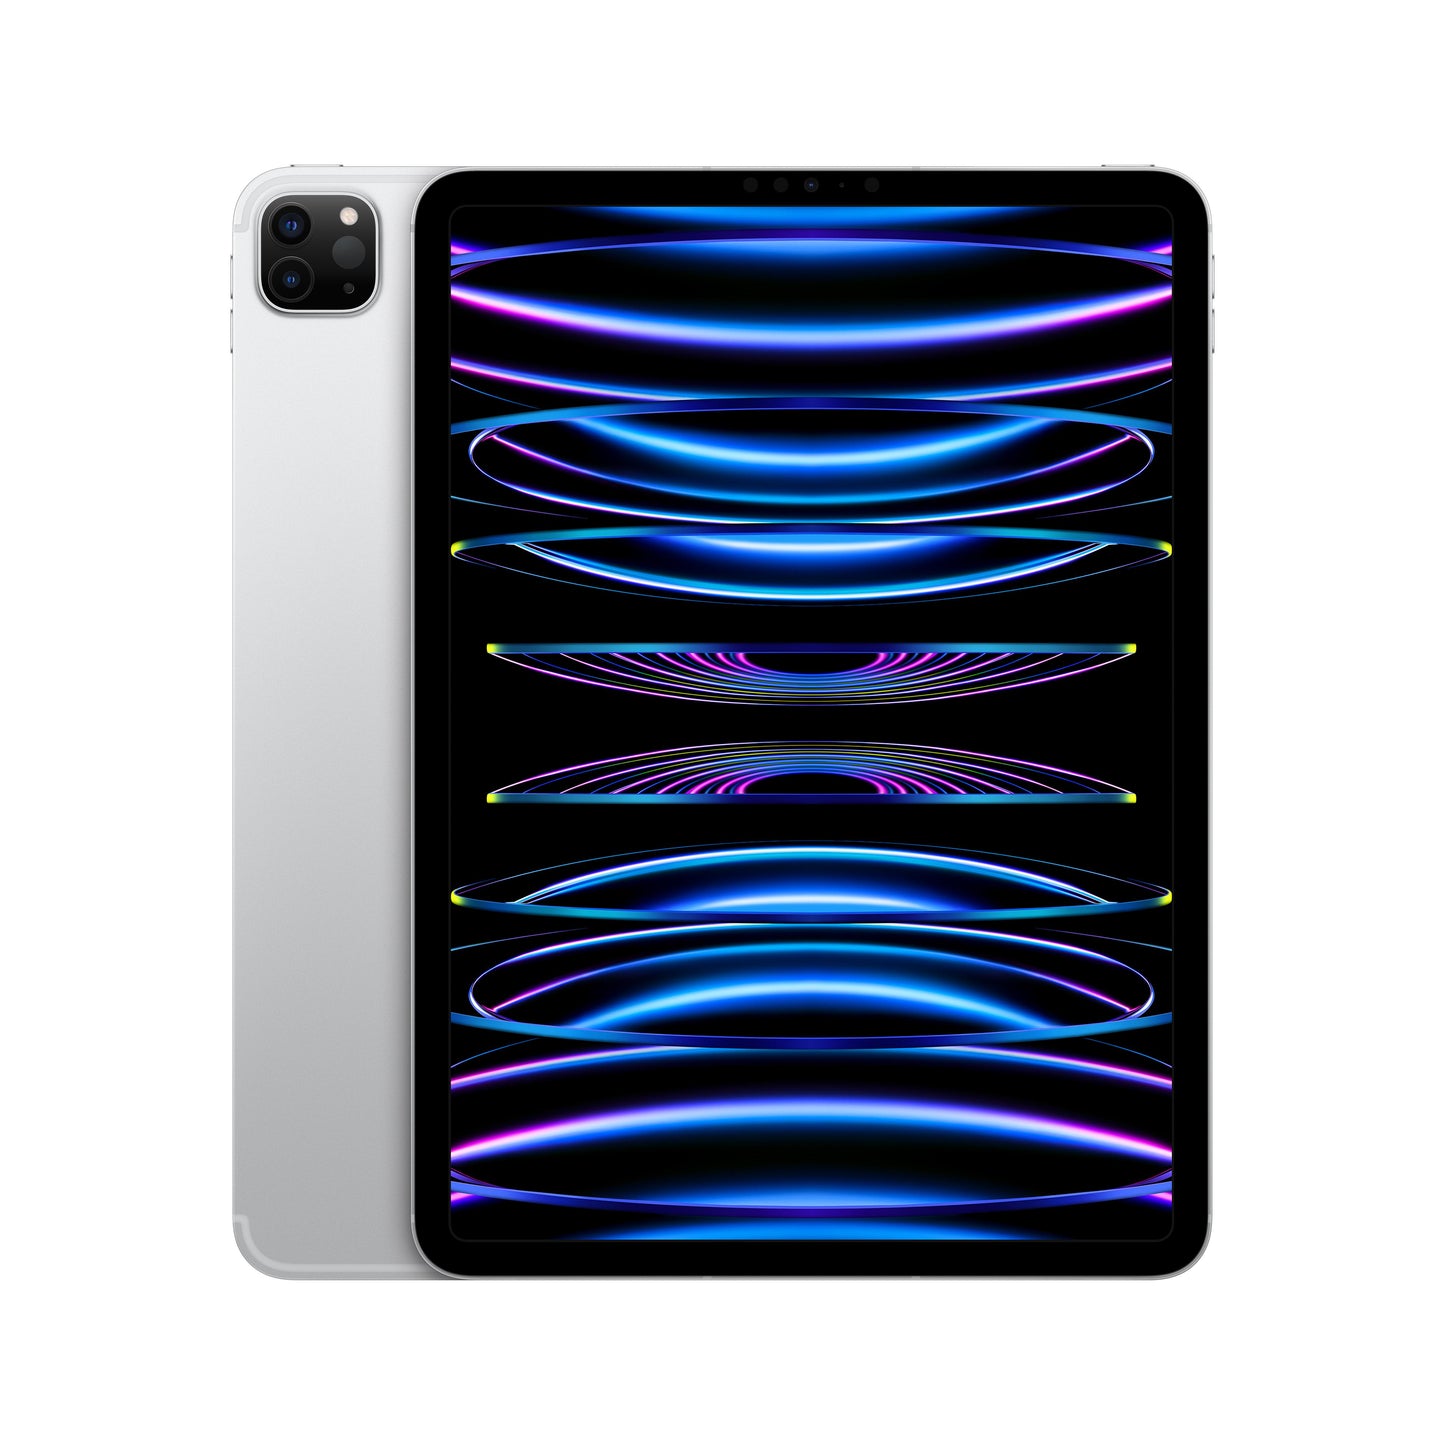 11-inch iPad Pro (4th Gen) Wi-Fi + Cellular 2TB - Silver